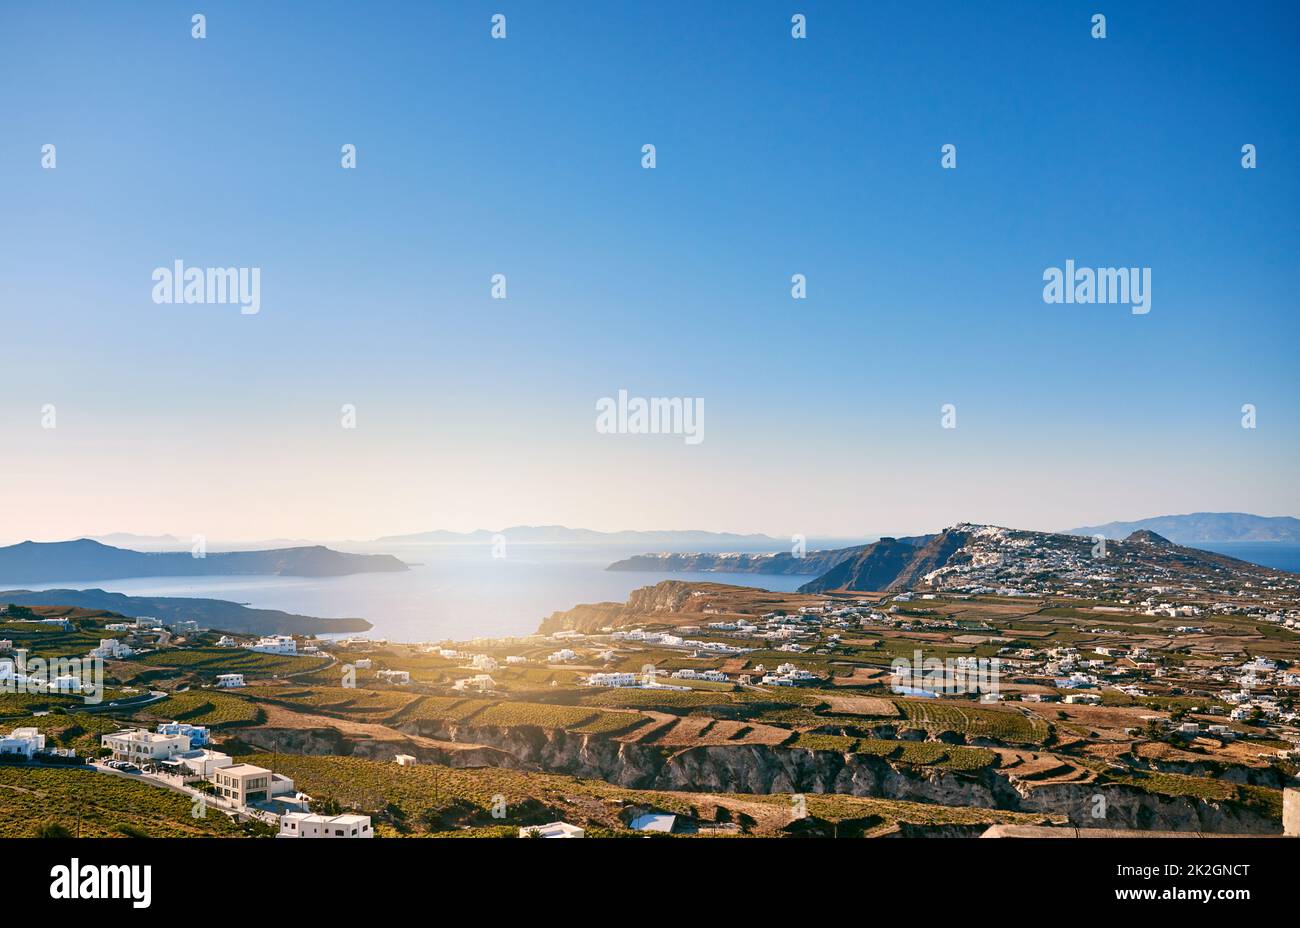 La terre s'étend sur des kilomètres. Photo d'arrière-plan d'un beau paysage de rivage en méditerranée pendant la journée. Banque D'Images